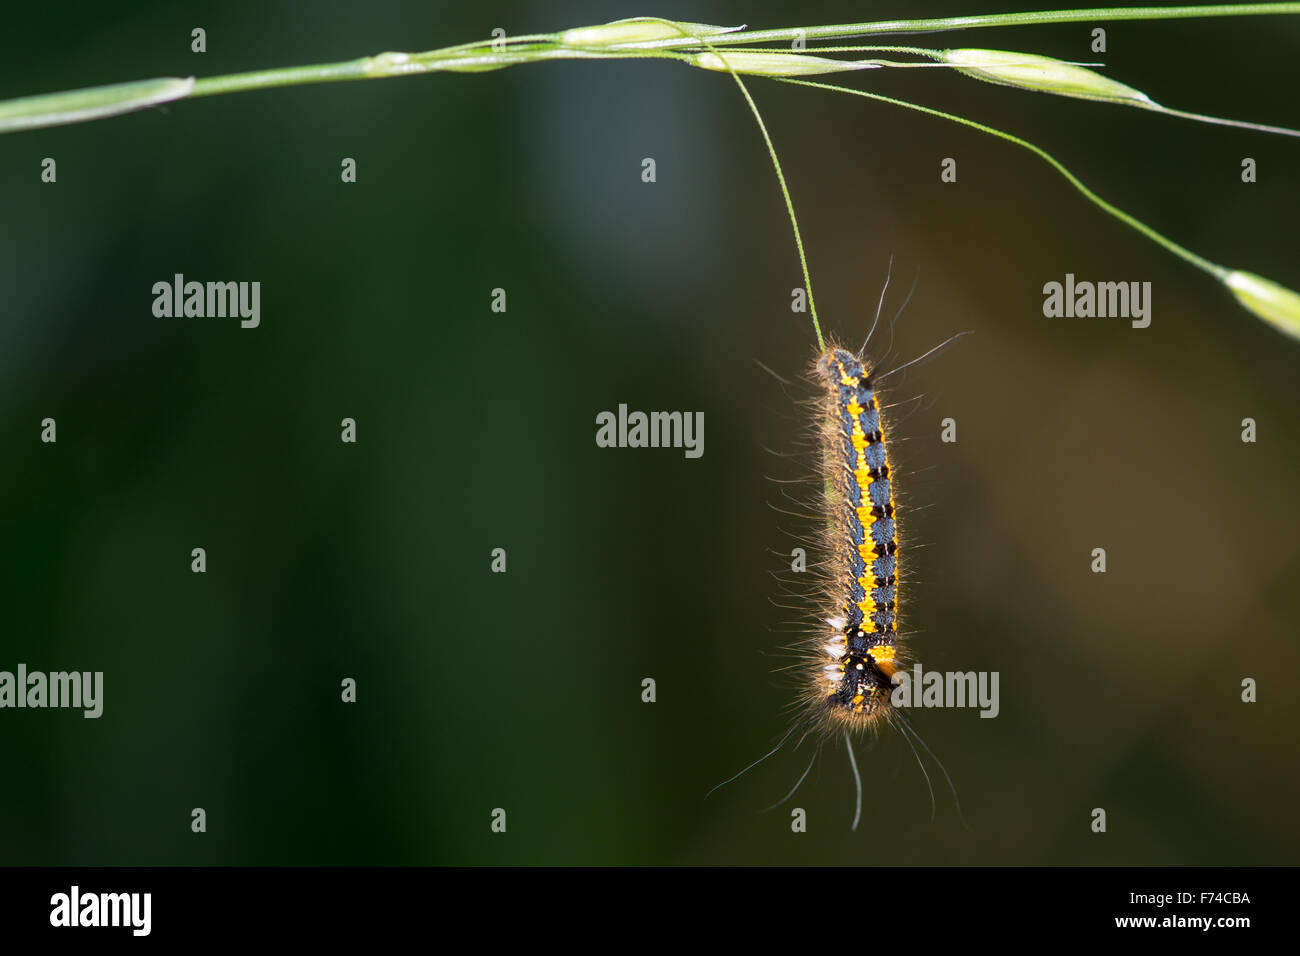 Drinker (Euthrix potatoria) caterpillar hanging from grass Stock Photo